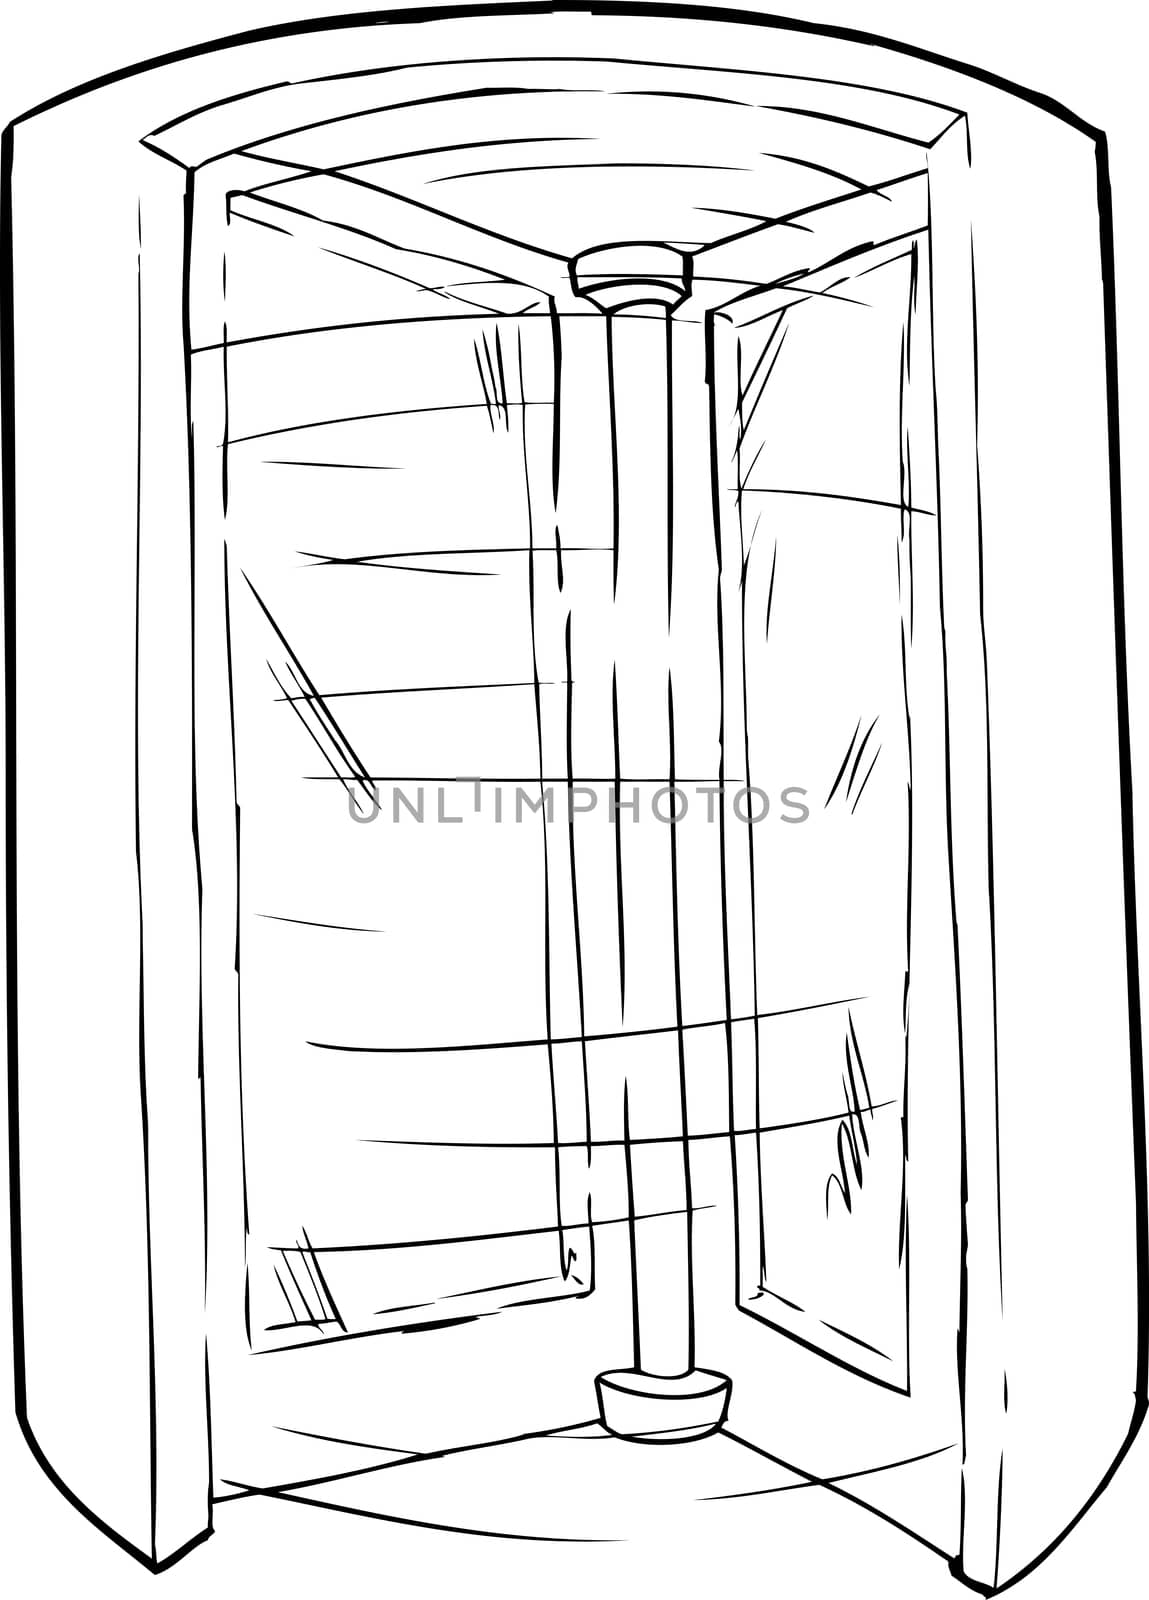 Outlined cartoon doorway with spinning revolving door